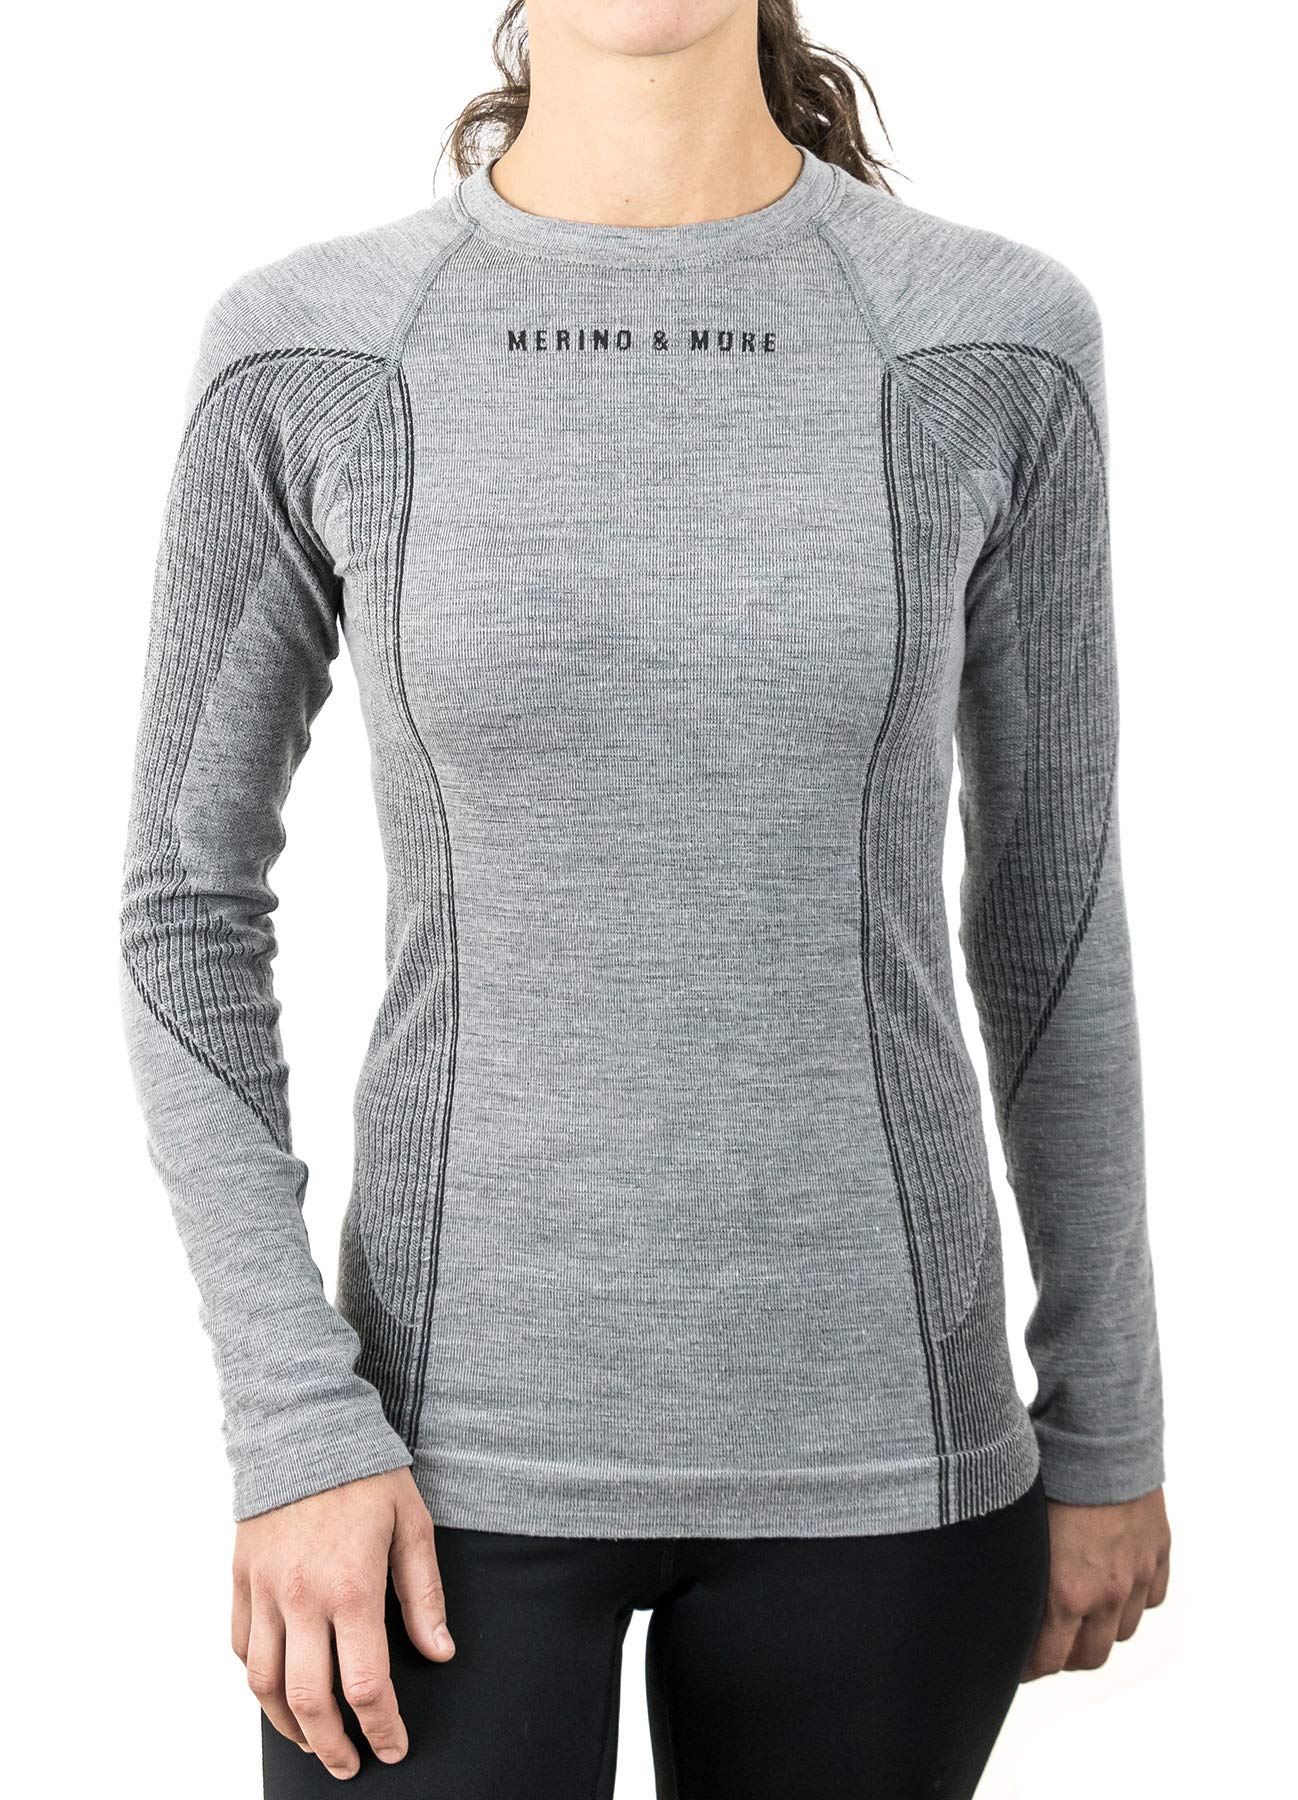 Merino & More Merino Shirt Damen Langarm - Premium Funktionsunterwäsche aus Merinowolle - Sport - Langarm - Funktionsunterhemd schwarz-grau Gr. M